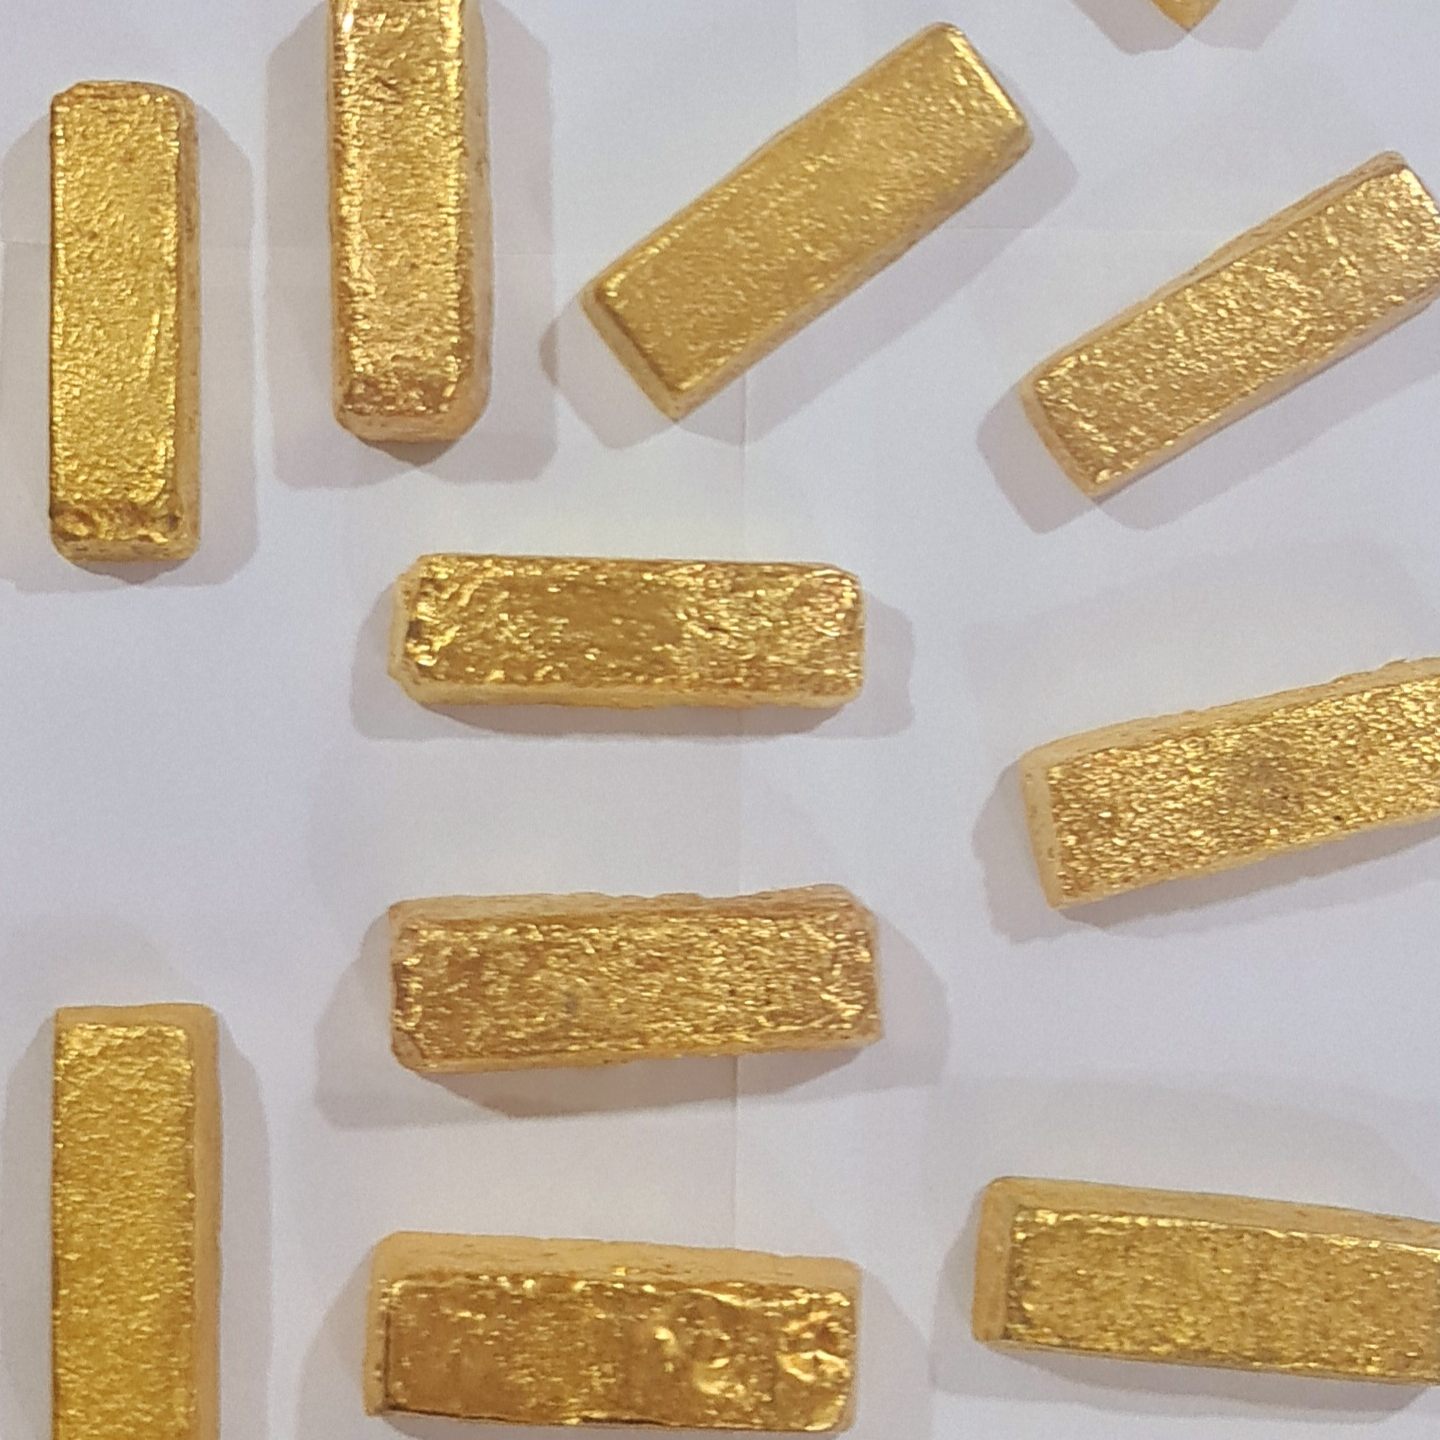 Gold Bars Exporters, Wholesaler & Manufacturer | Globaltradeplaza.com